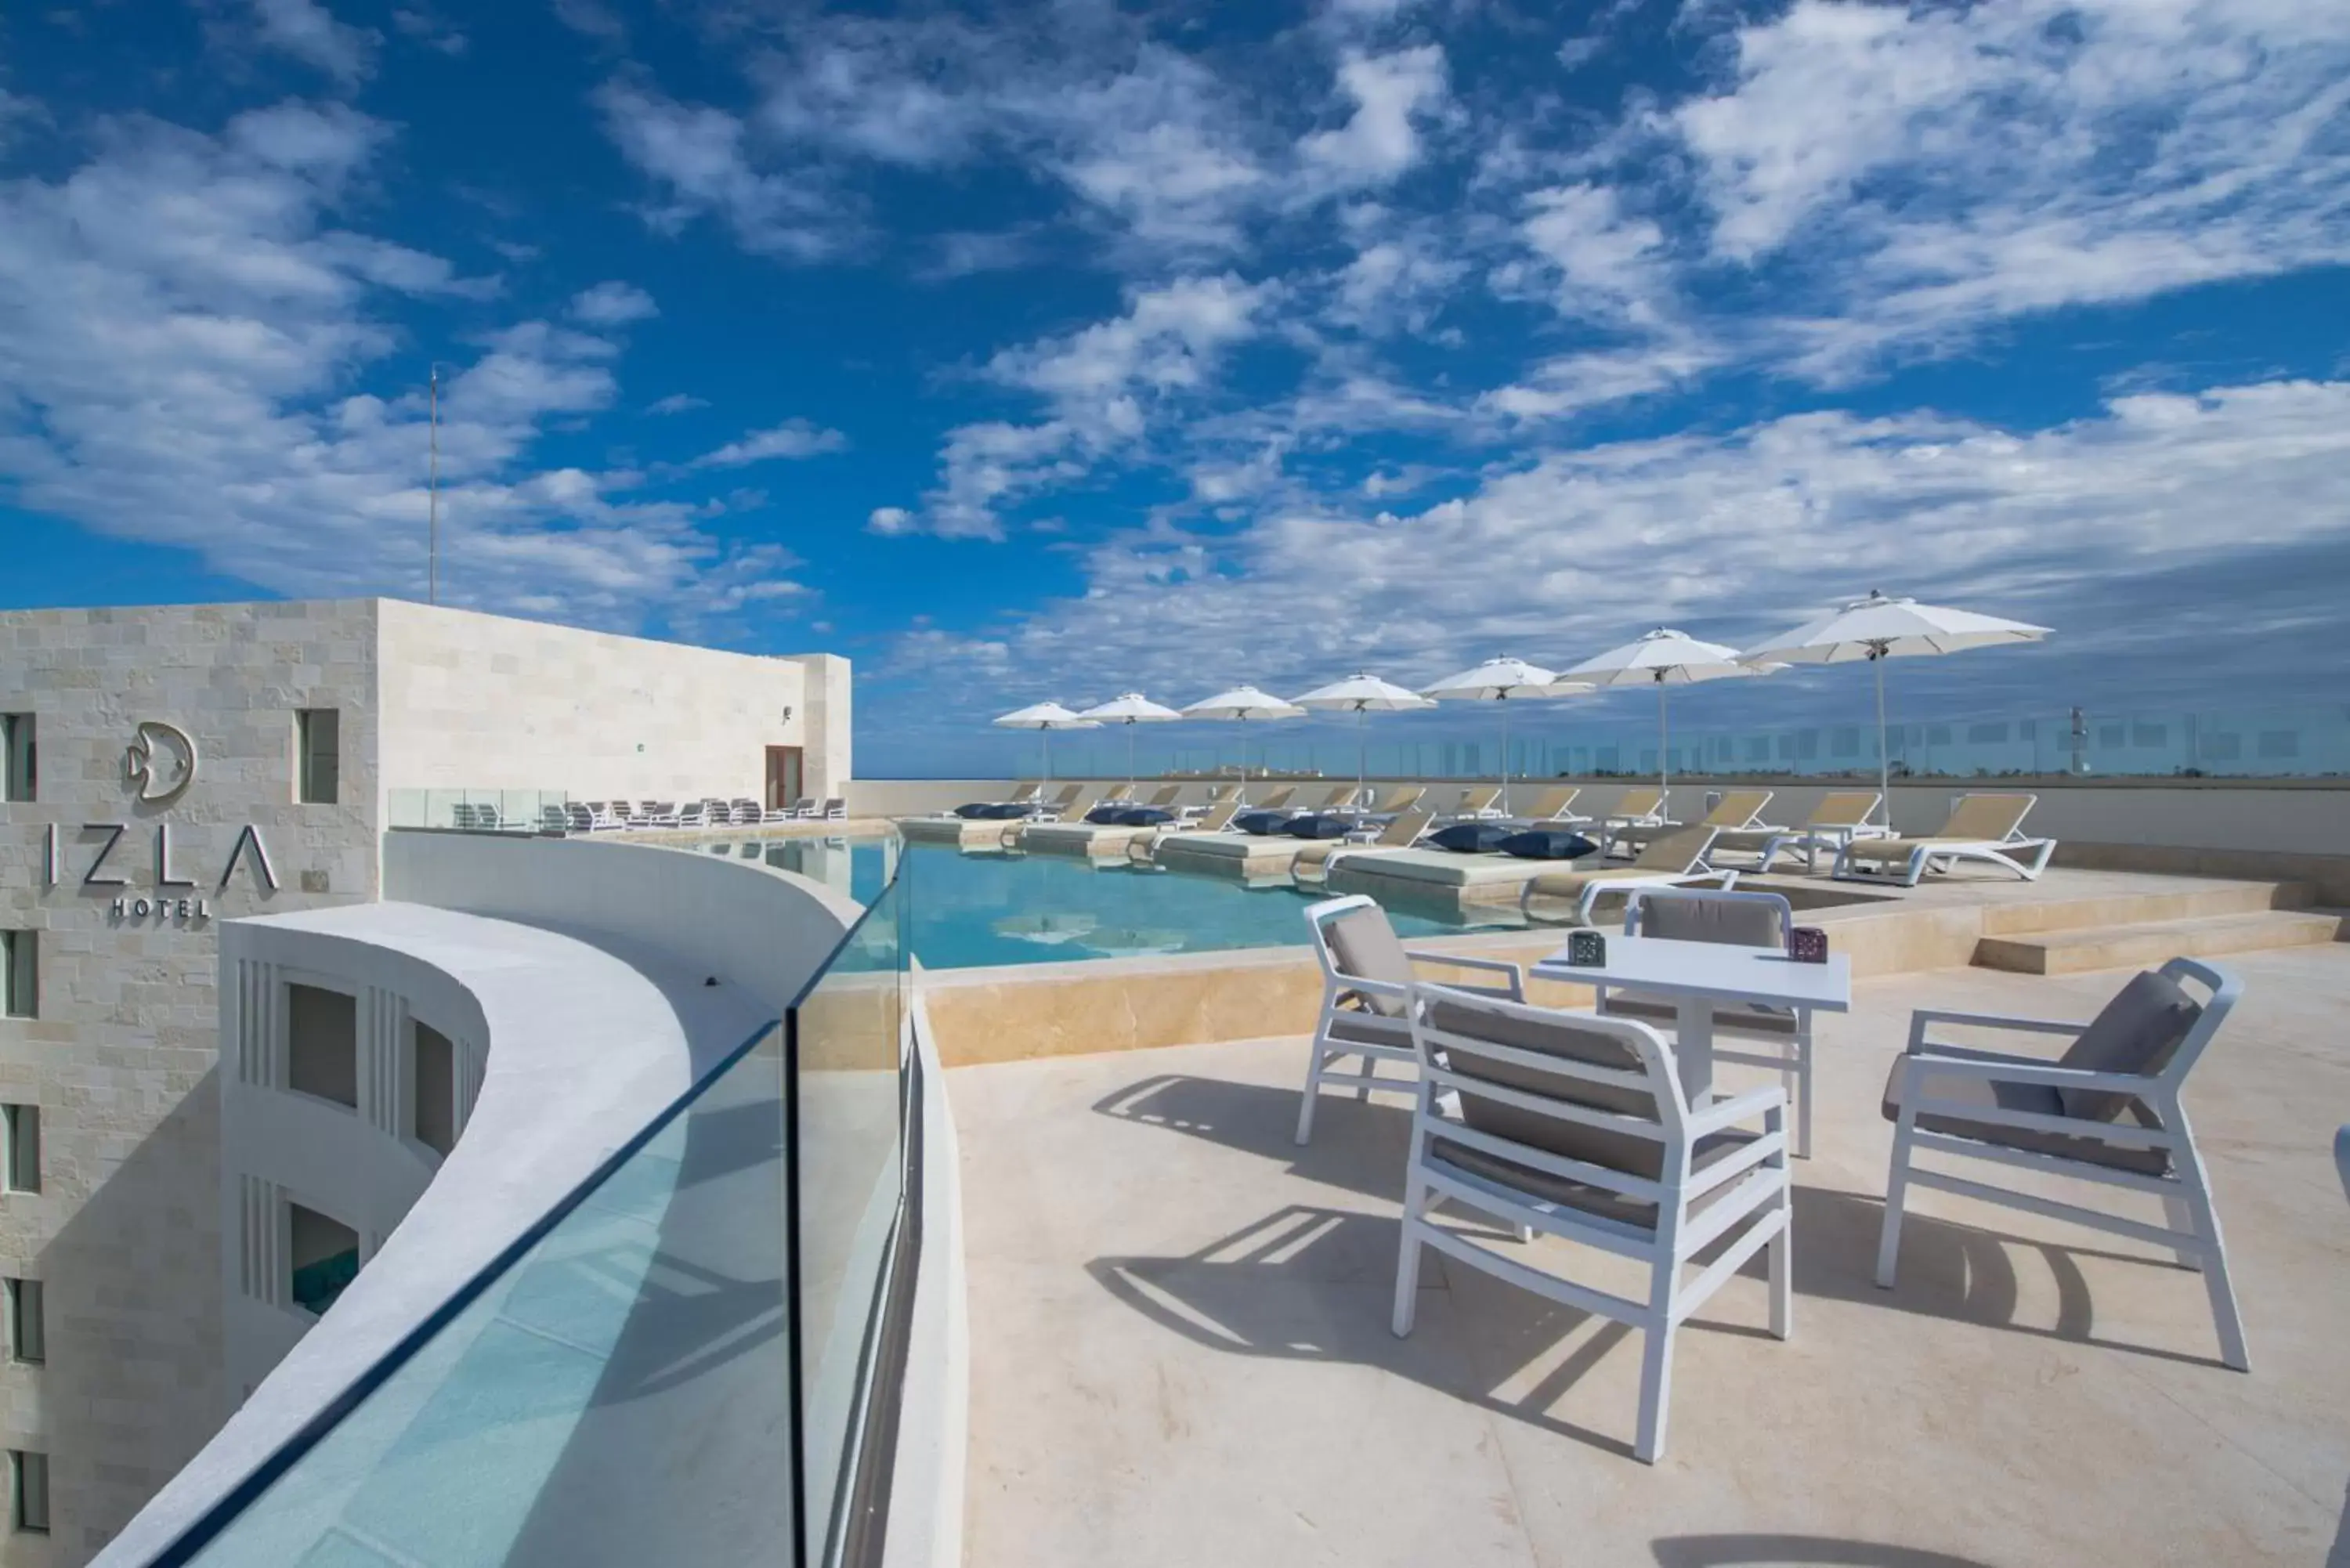 Swimming pool, Balcony/Terrace in Izla Beach Front Hotel